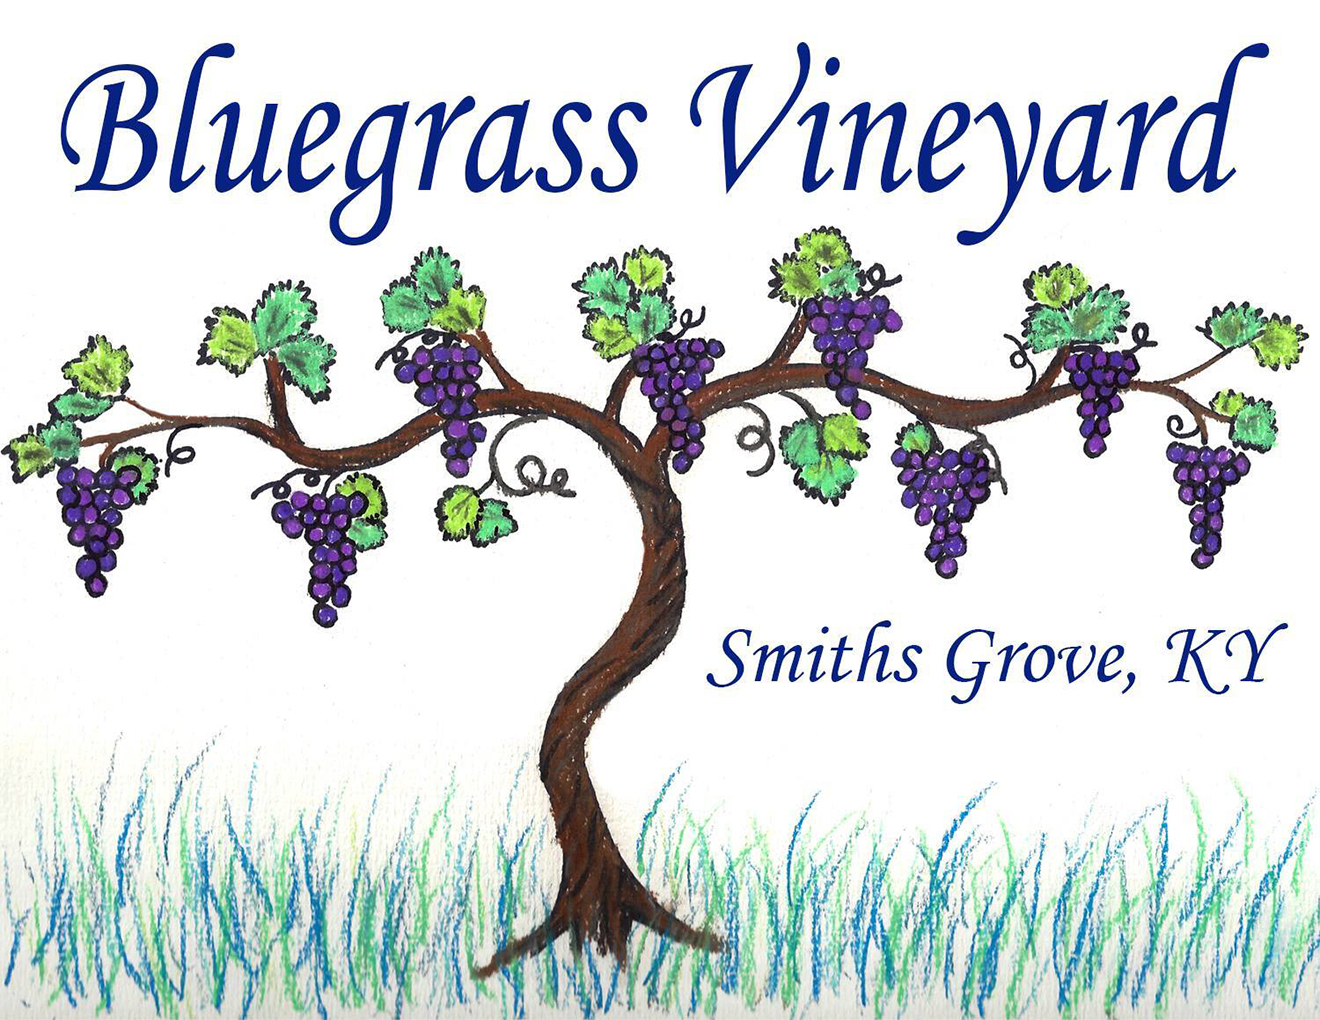 bluegrass-vineyard-logo